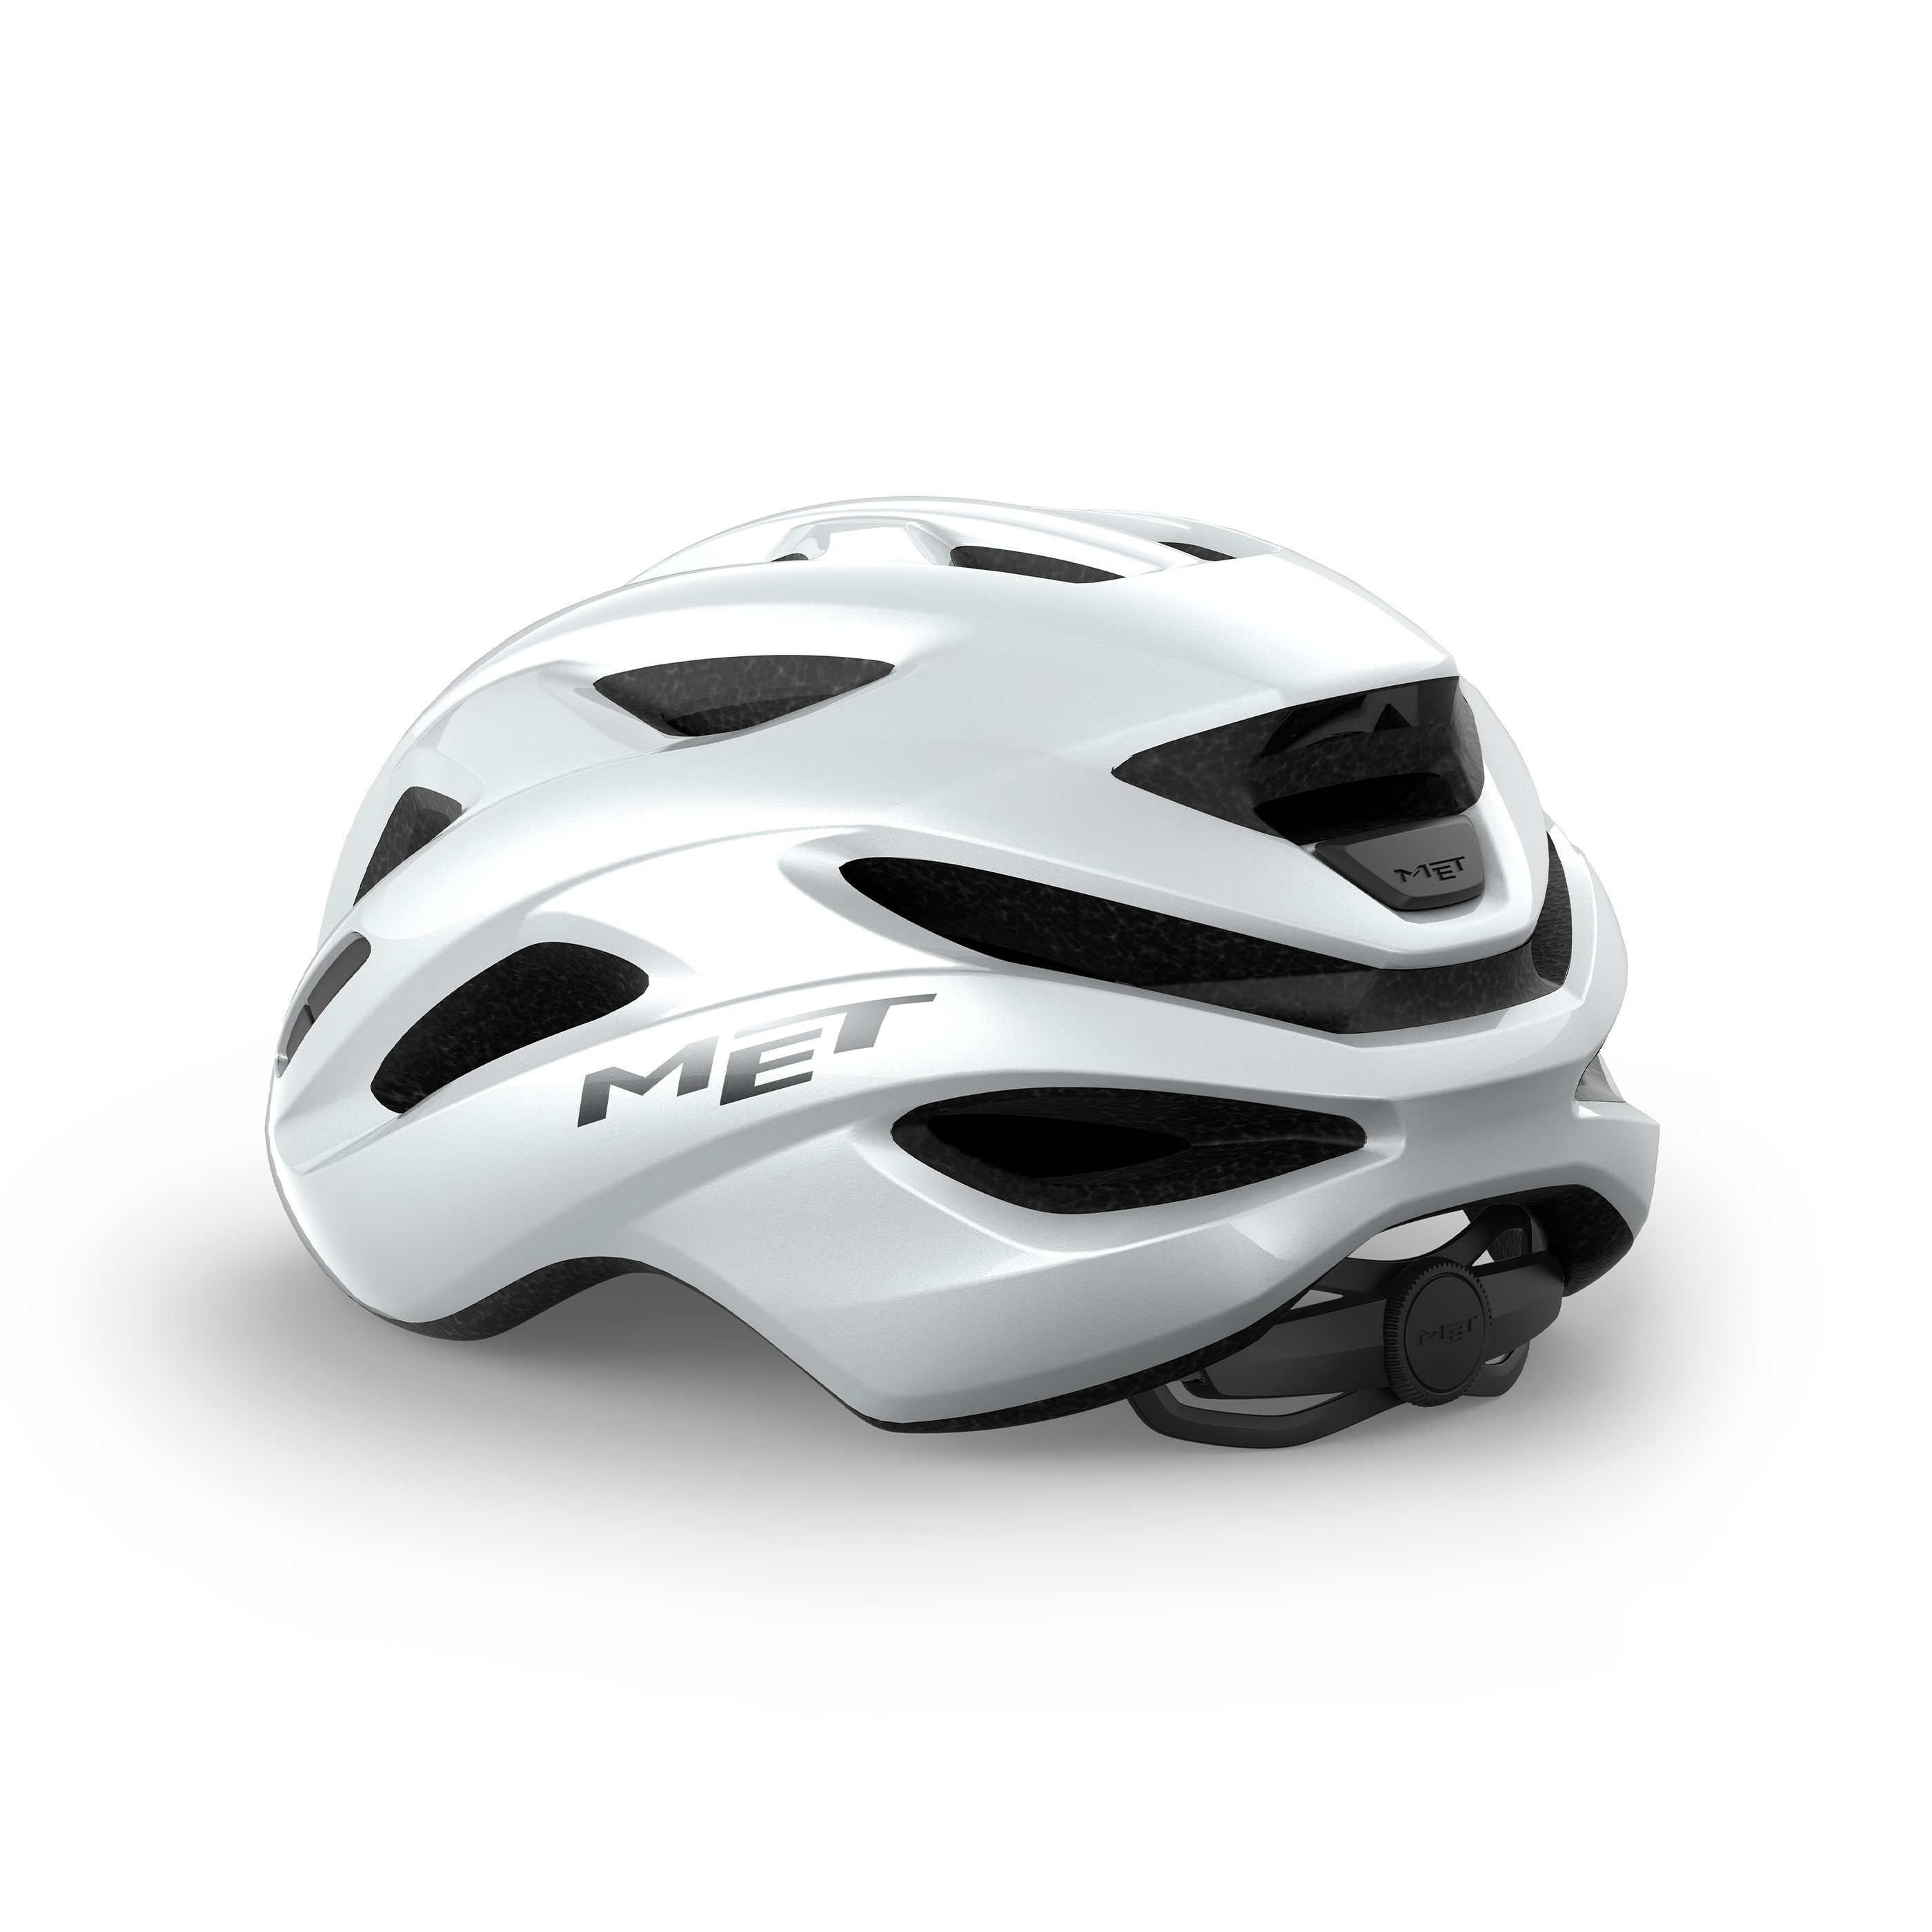 met-idolo-road-cycling-helmet-M150BI1-back